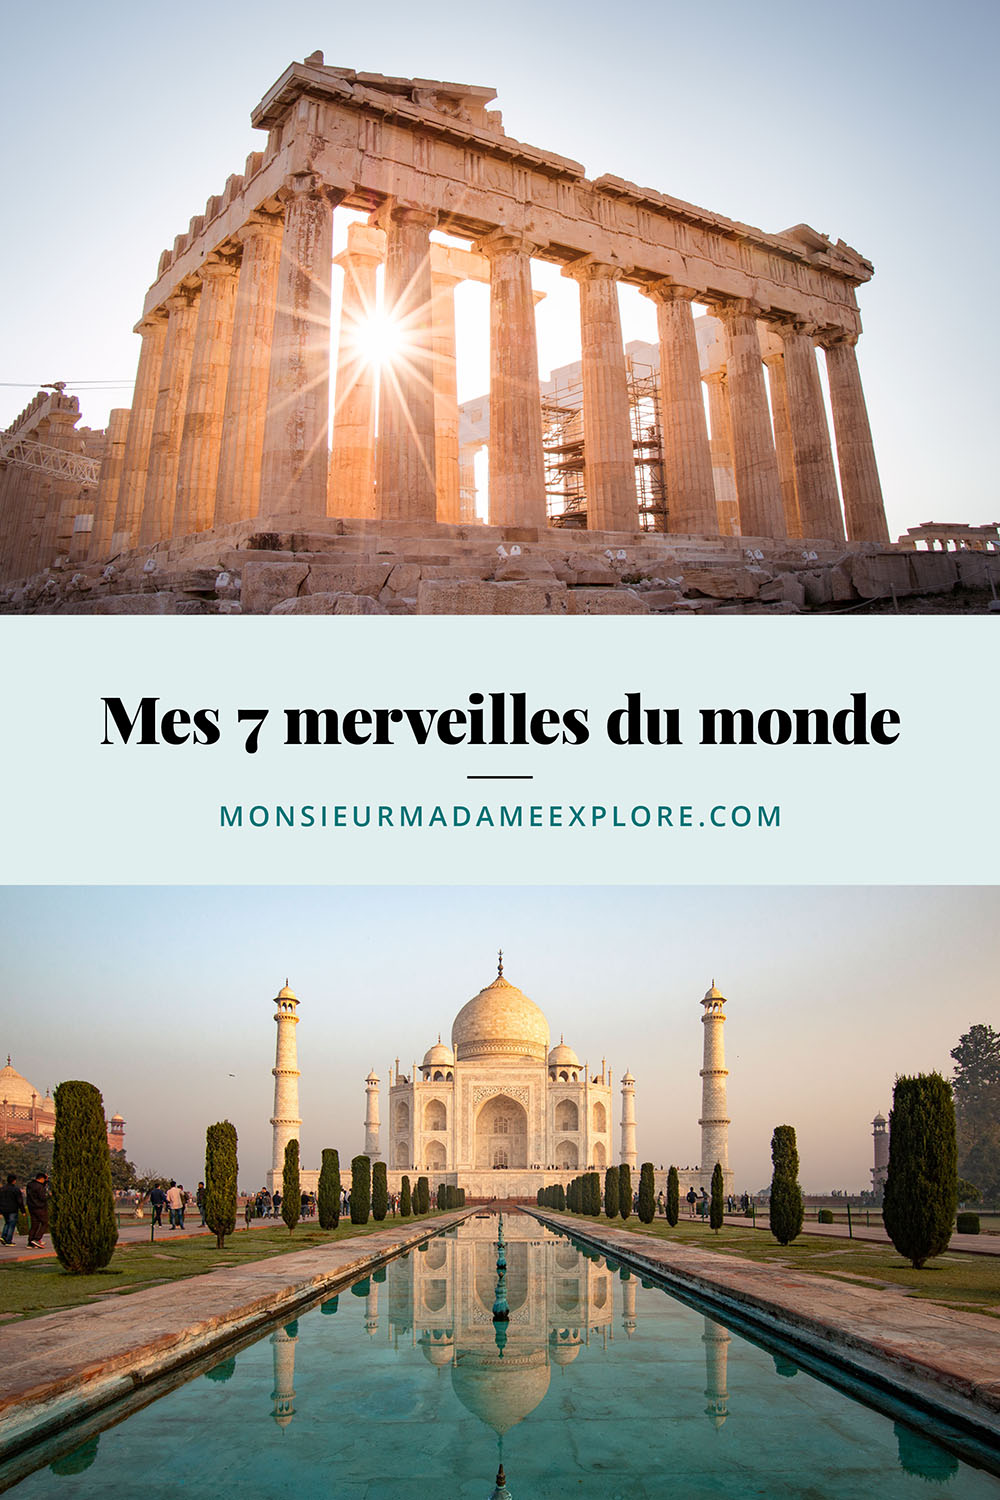 Mes 7 merveilles du monde, Monsieur+Madame Explore, Blogue de voyage / My top 7 wonders of the world